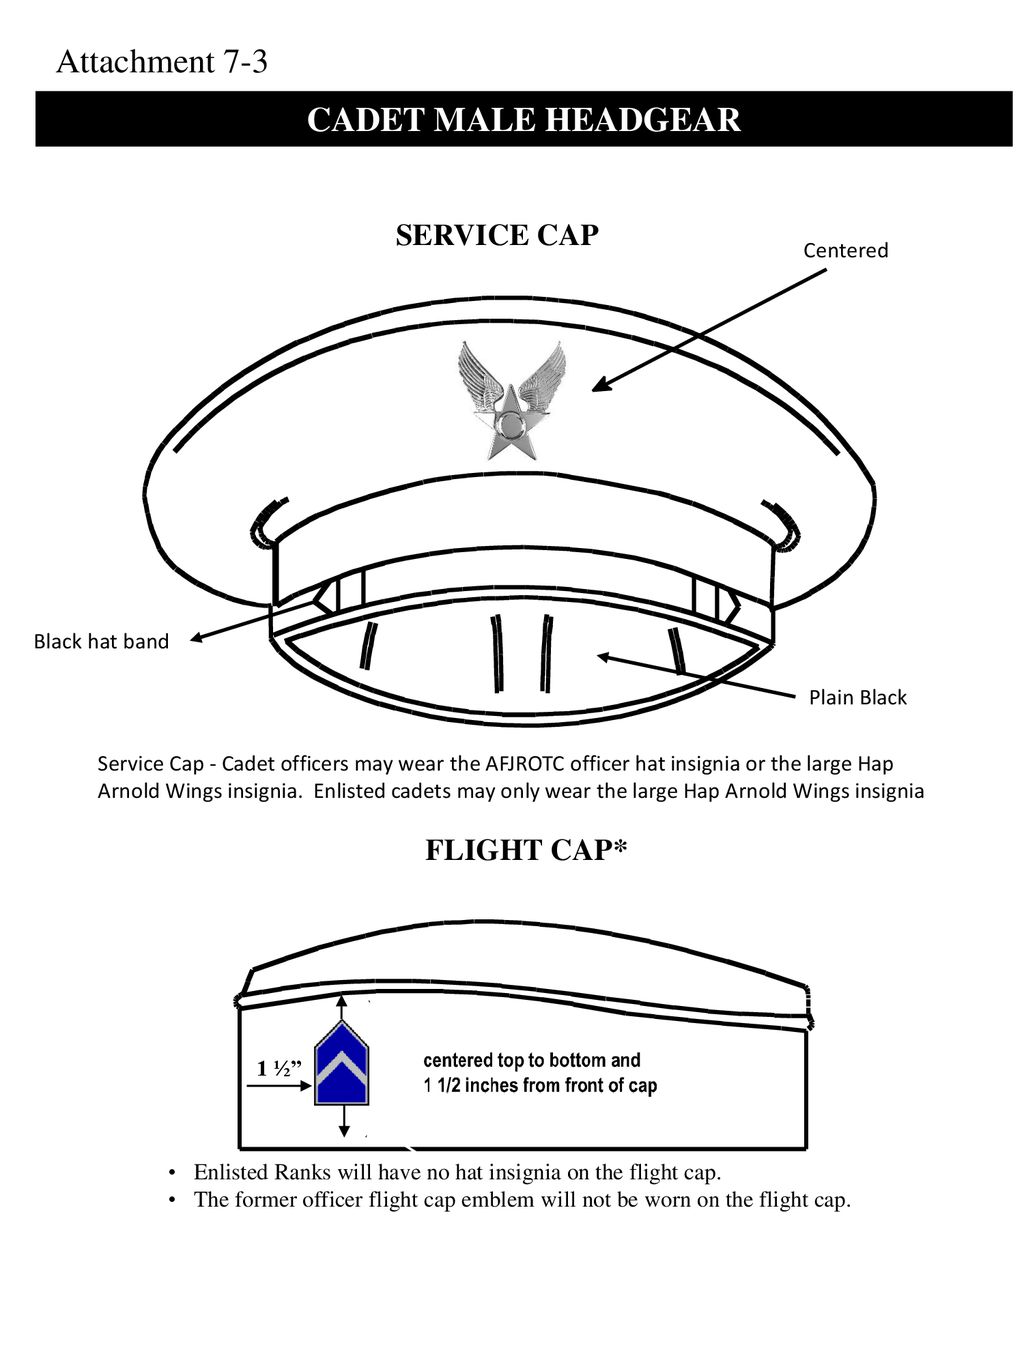 Flight Caps & Service Caps